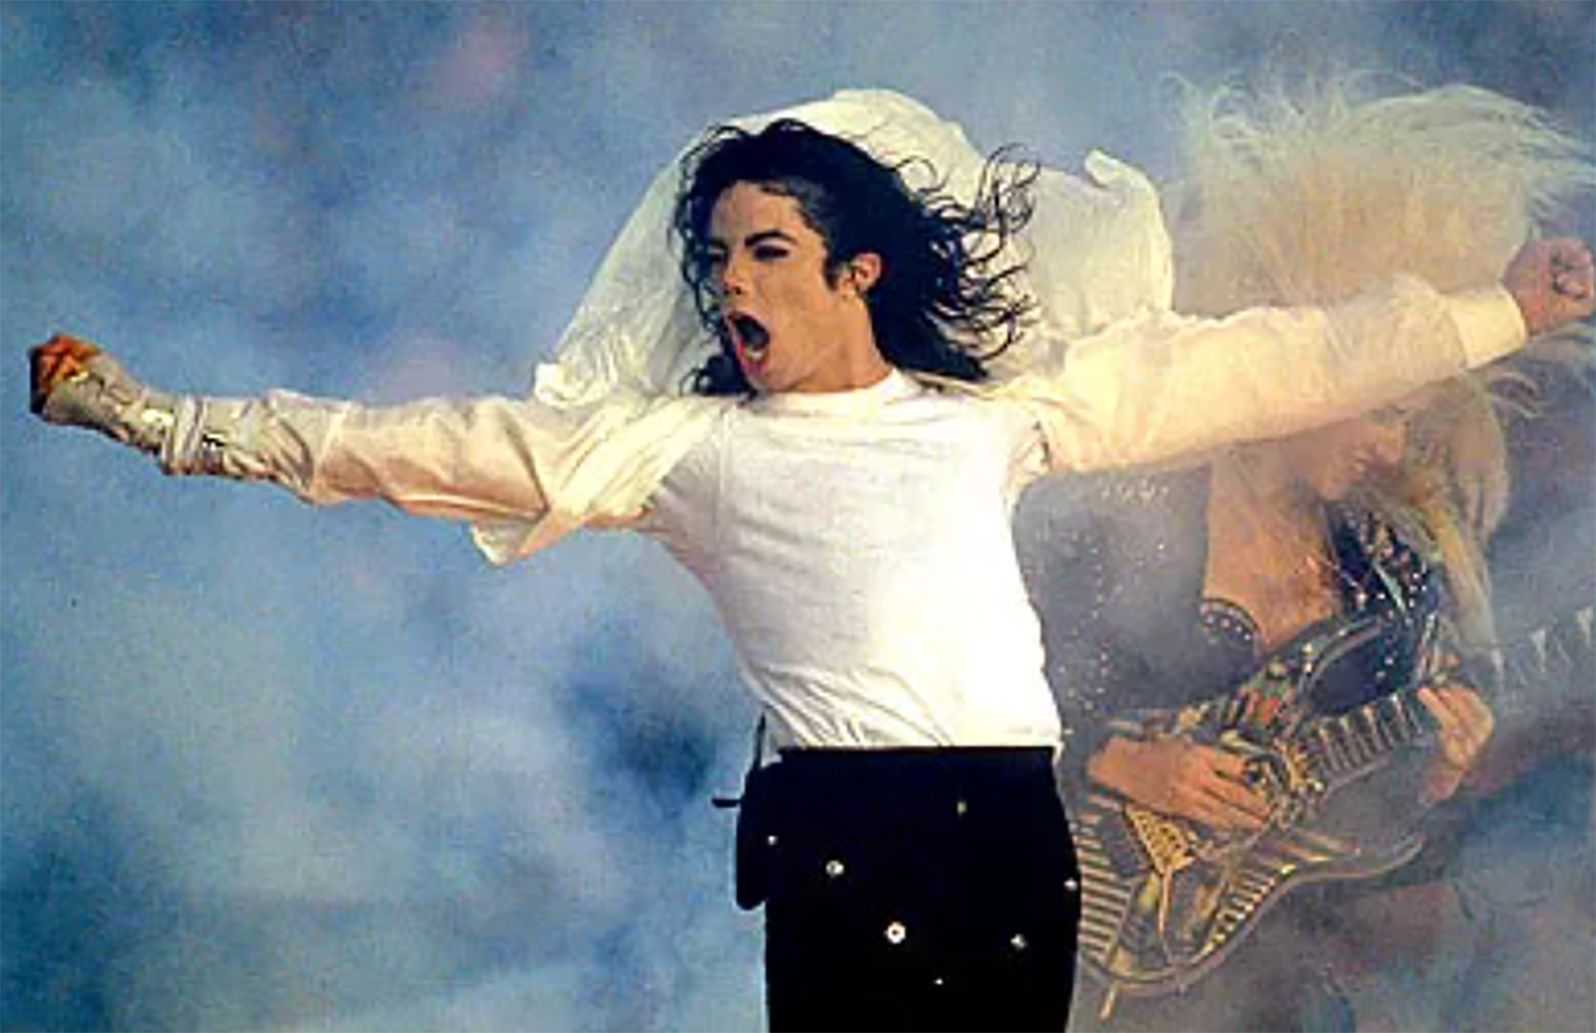 Nhìn lại cuộc đời Michael Jackson 14 năm sau ngày qua đời